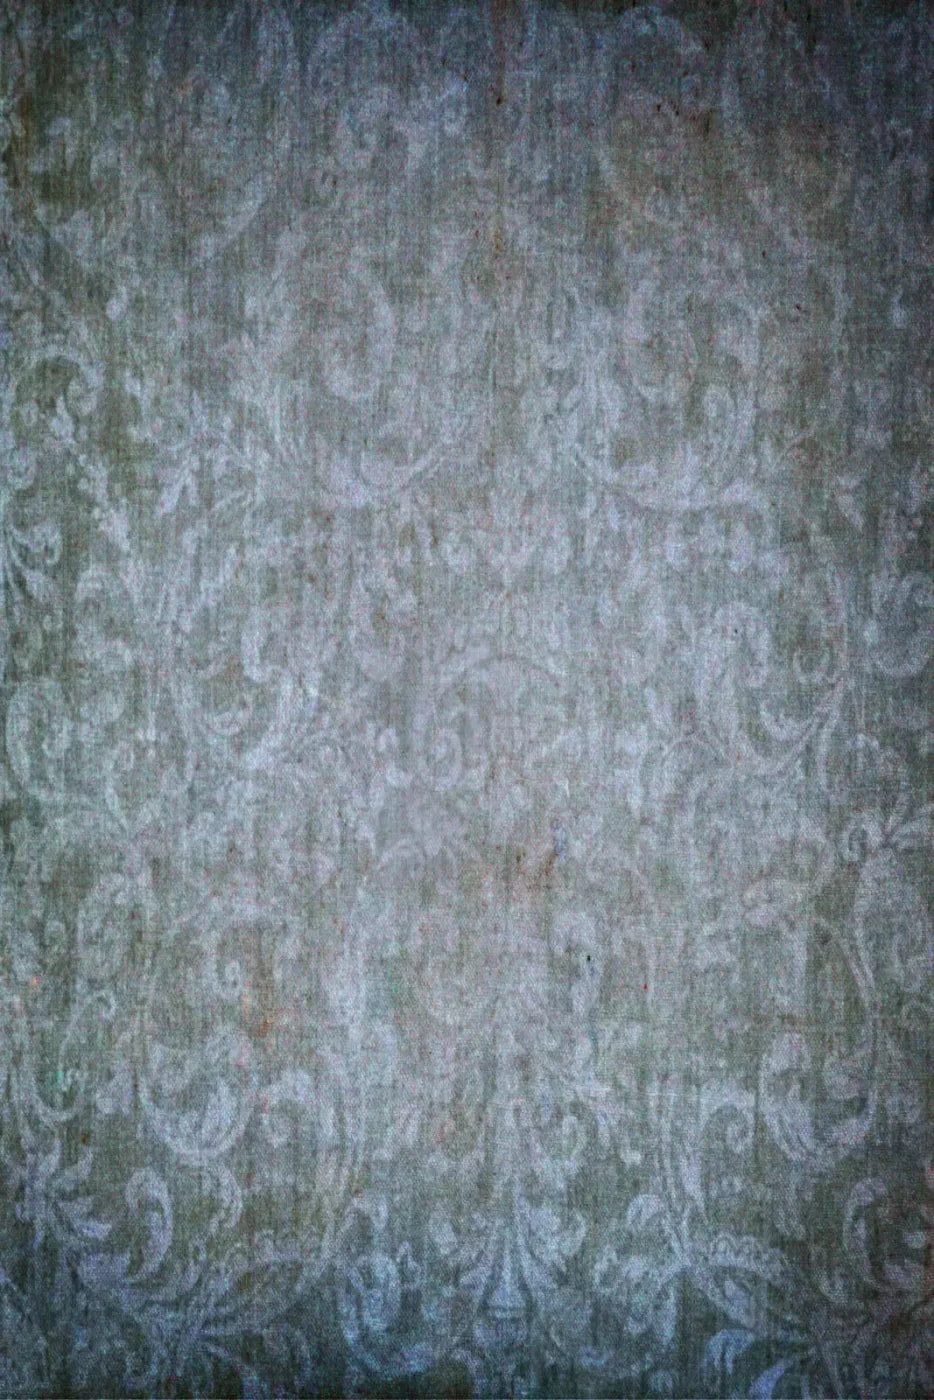 Daydreams 4X5 Rubbermat Floor ( 48 X 60 Inch ) Backdrop